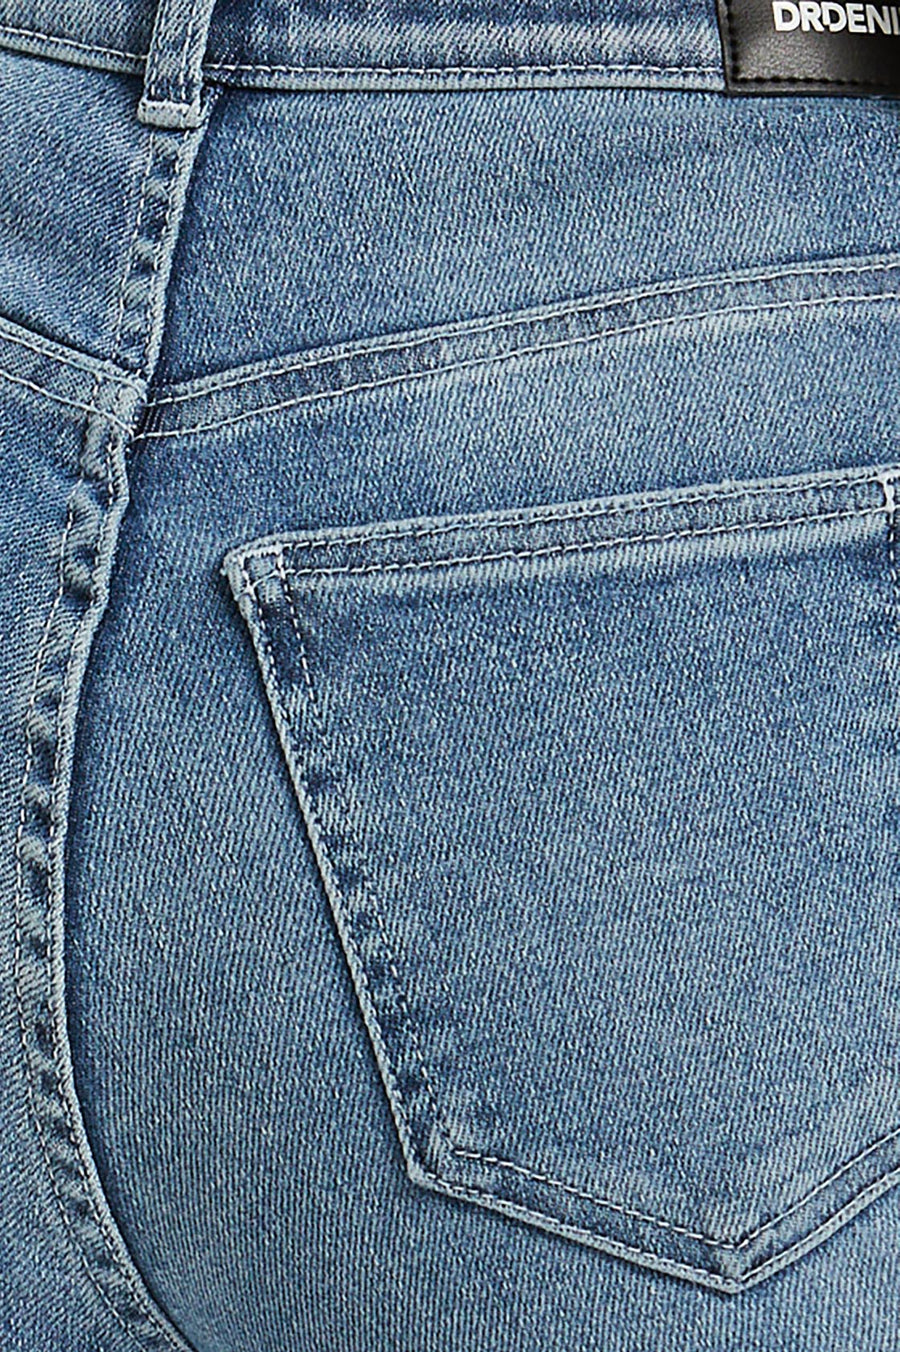 Moxy Straight Jeans - Breeze Mid Worn Hem - Dr Denim Jeans - Australia & NZ